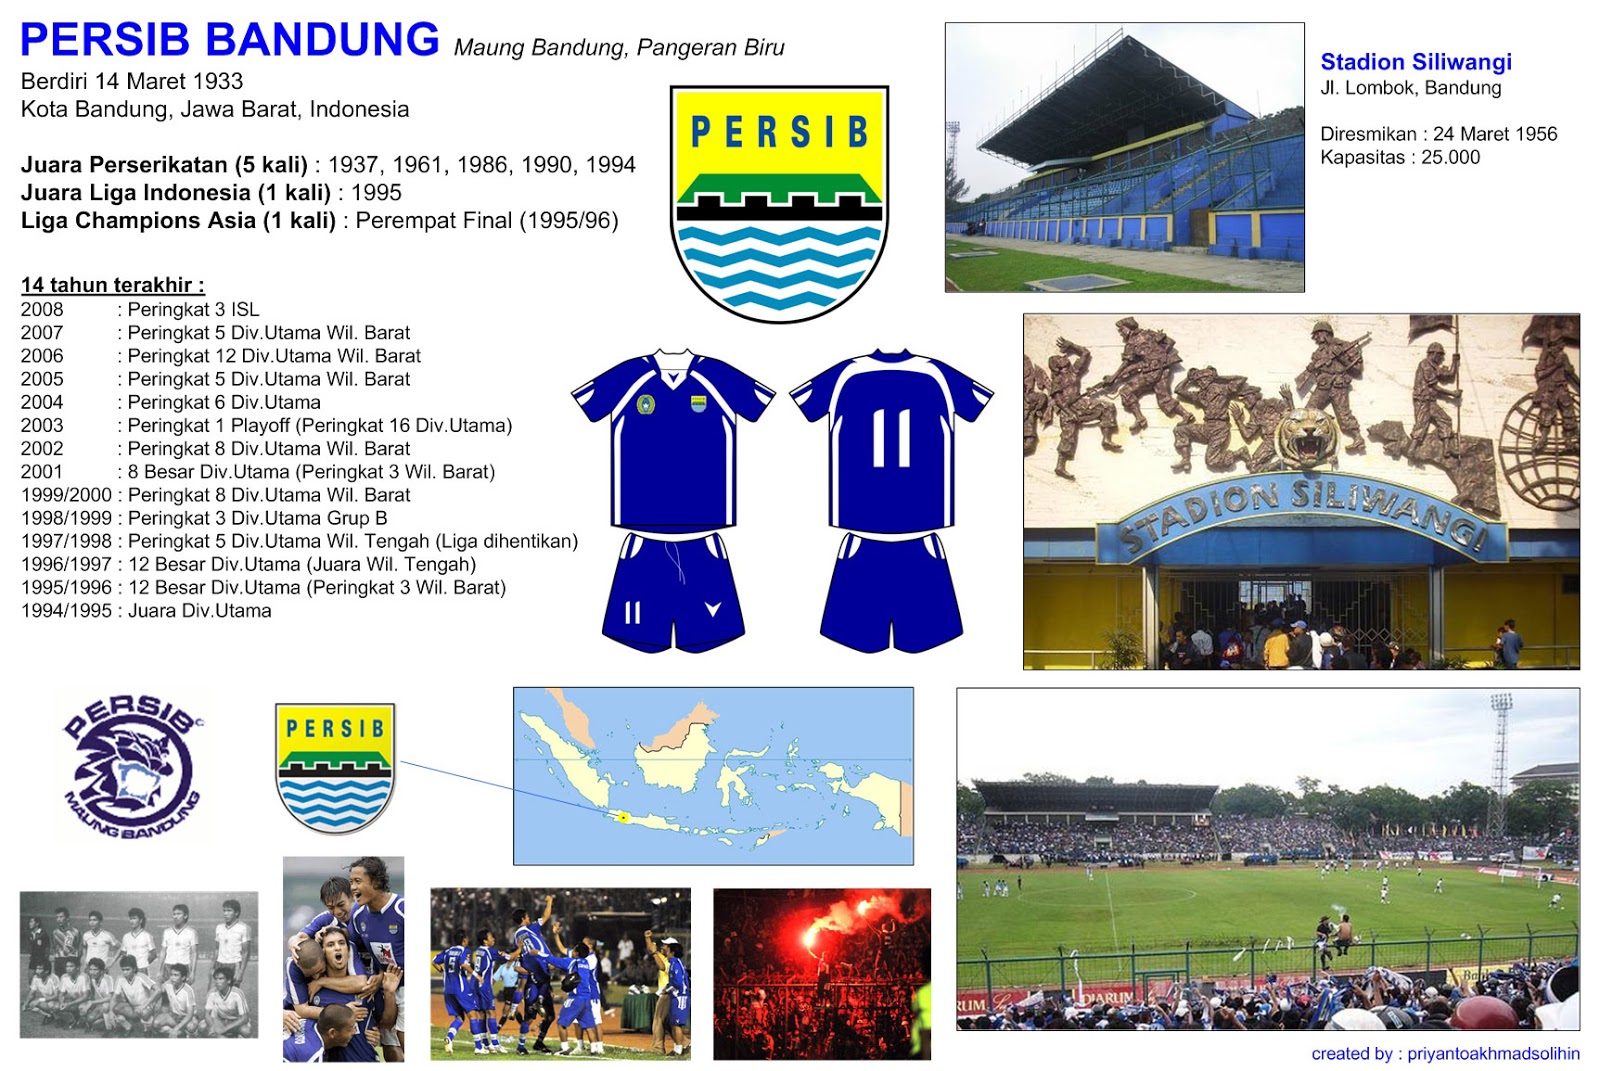 Persib Bandung / Football Kit Mockup: Persib Bandung Kit - Indonesia